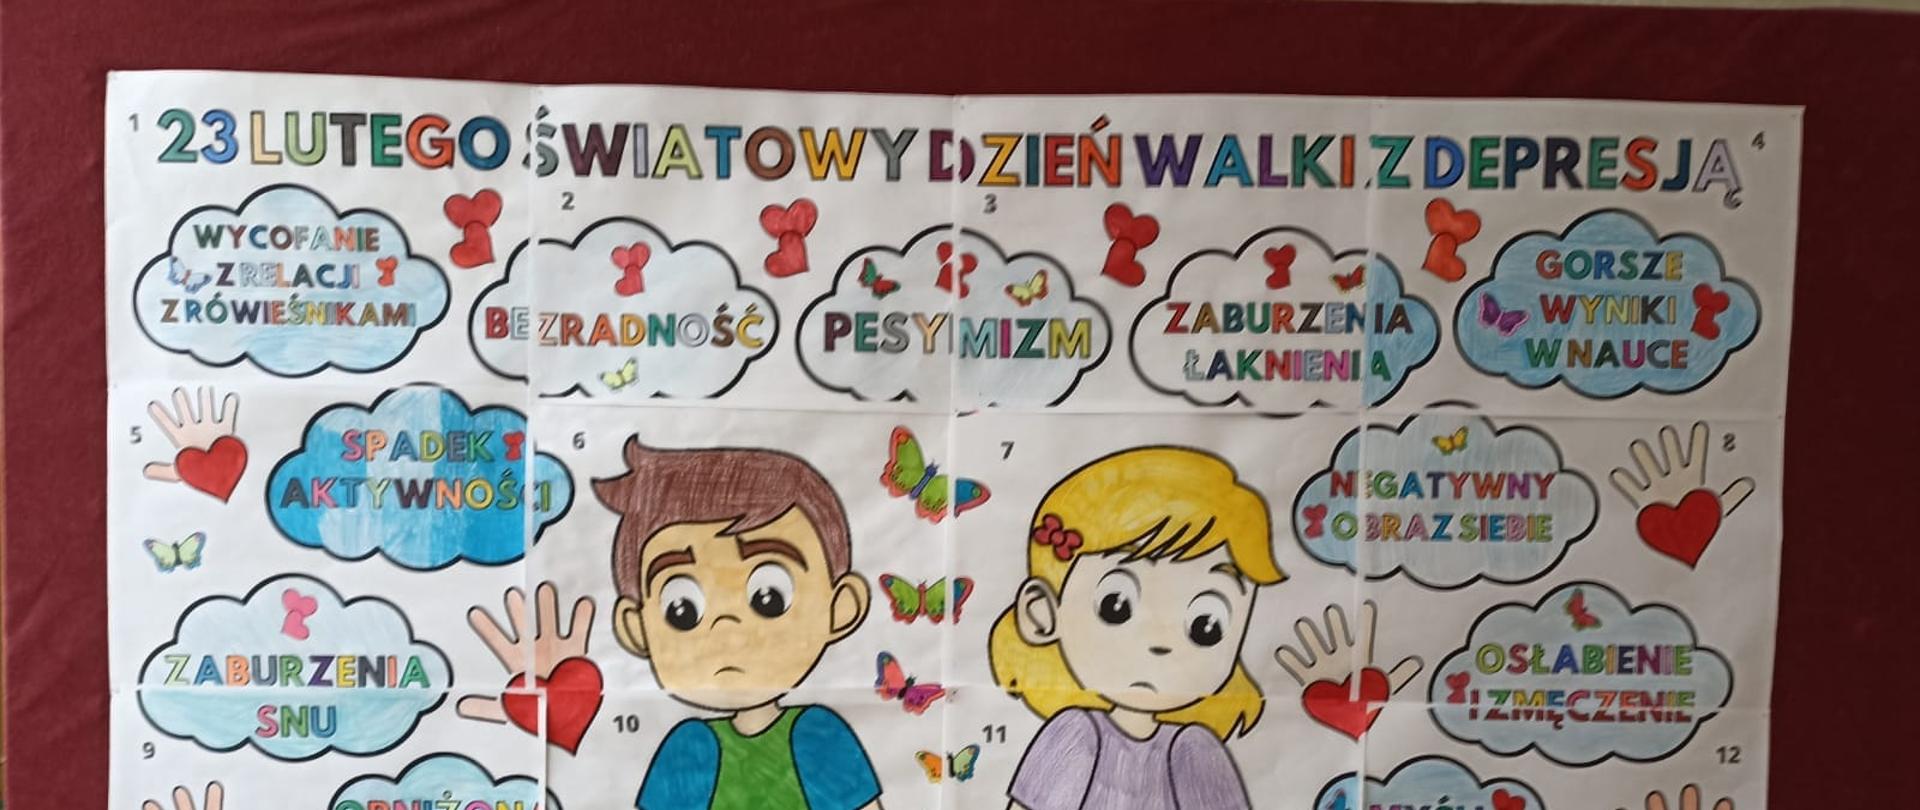 Plakat w wykonaniu dzieci, na środku stoją chłopczyk i dziewczynka ze smutnymi minami, wokół nich znajdują się chmurki z napisami prezentującymi przejawy depresji